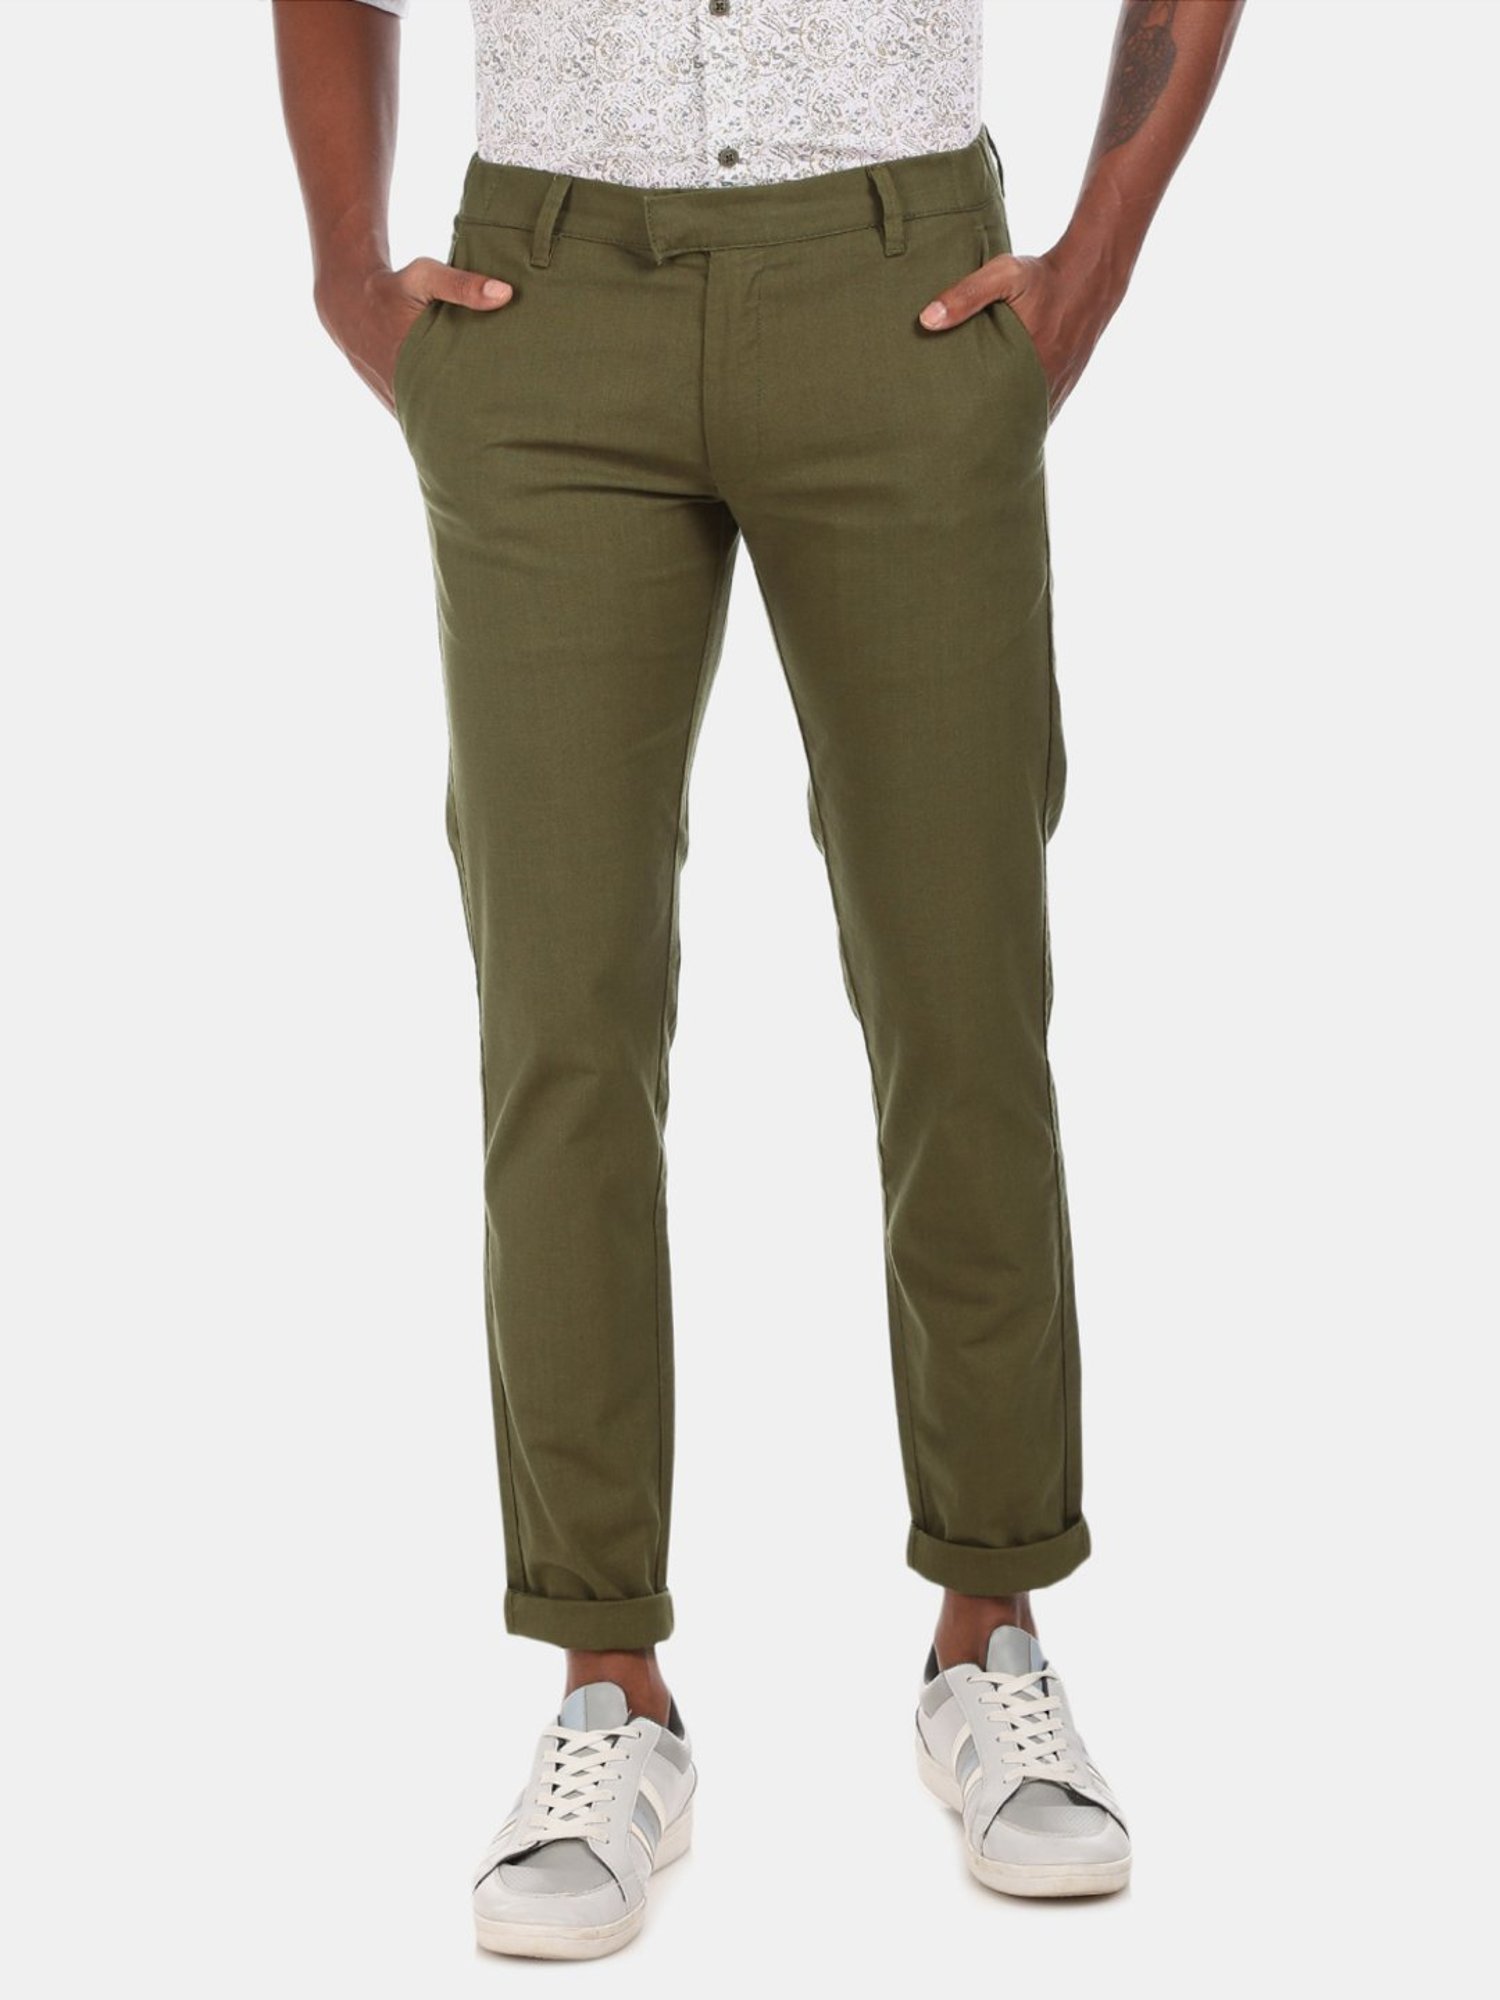 Buy Highlander Olive Green Slim Fit Solid Chinos for Men Online at Rs619   Ketch